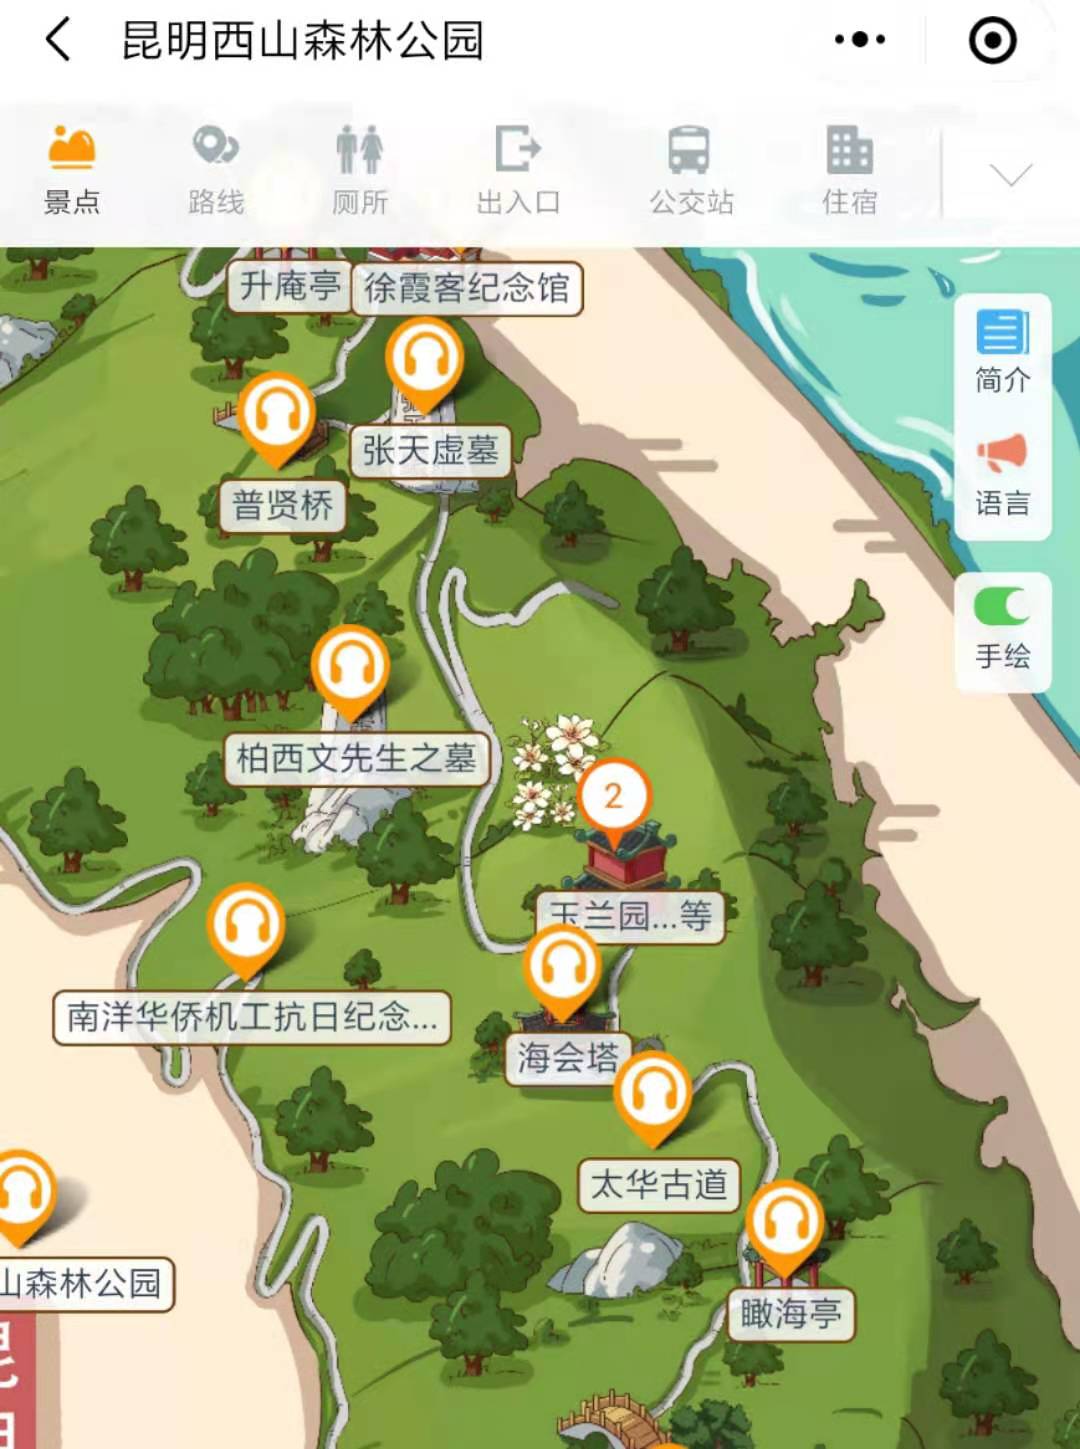 云南昆明西山森林公园手绘地图、语音讲解、电子导览等智能导览系统上线啦.jpg